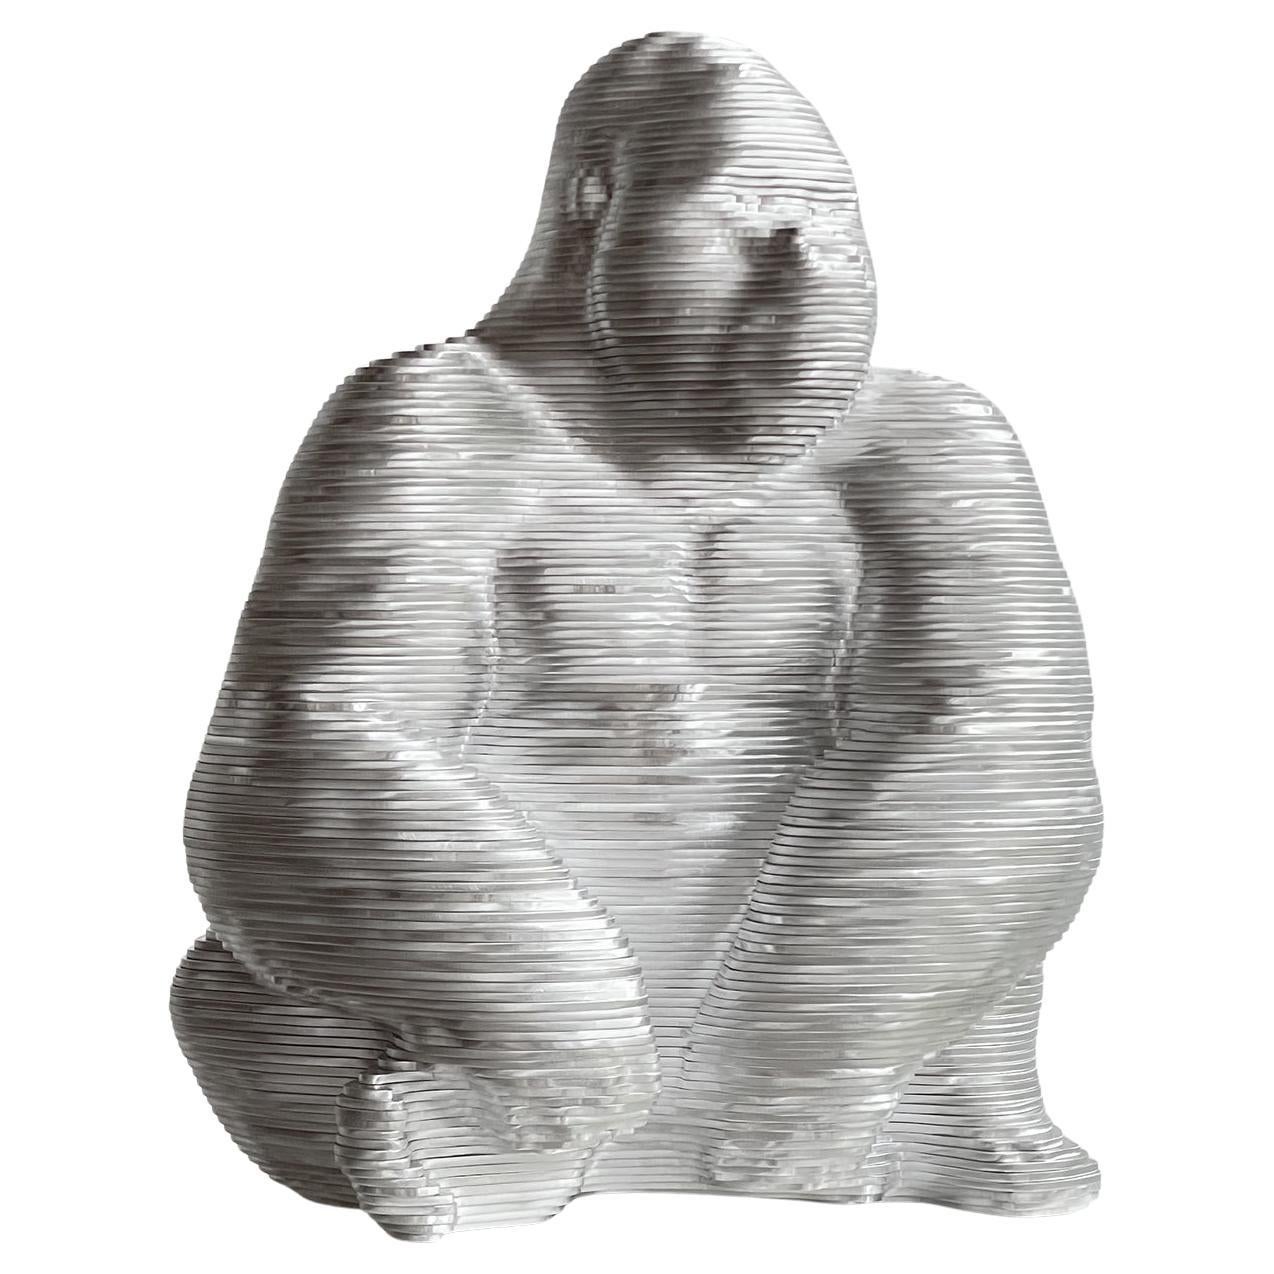 Gorille Polished Sculpture For Sale